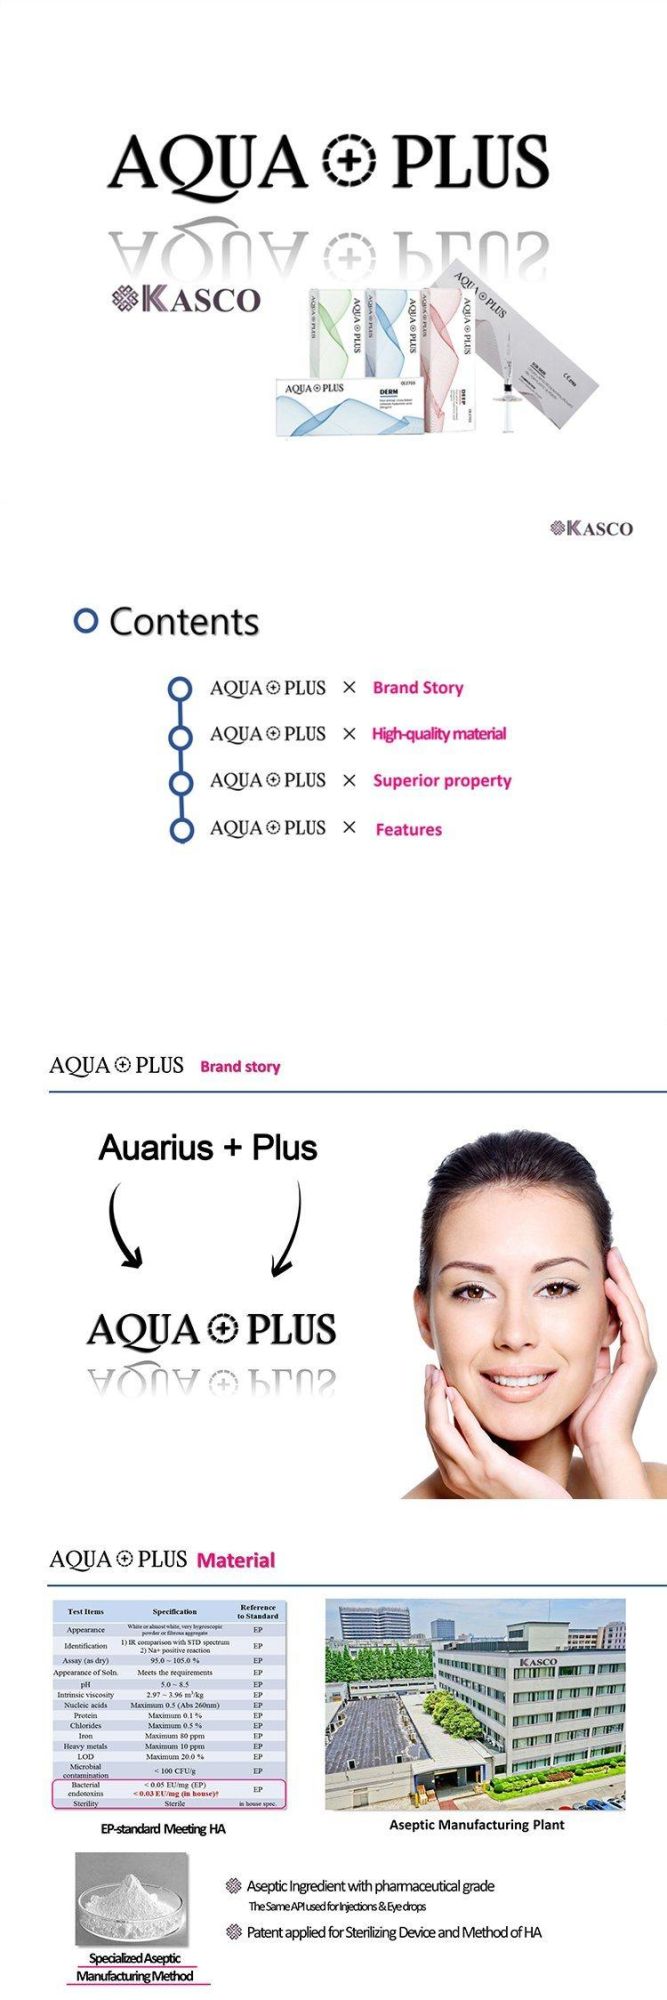 Aqua Plus Ha Injection on Promotion 2ml Deep Dermal Hyaluronic Acid Dermal Filler Into Face